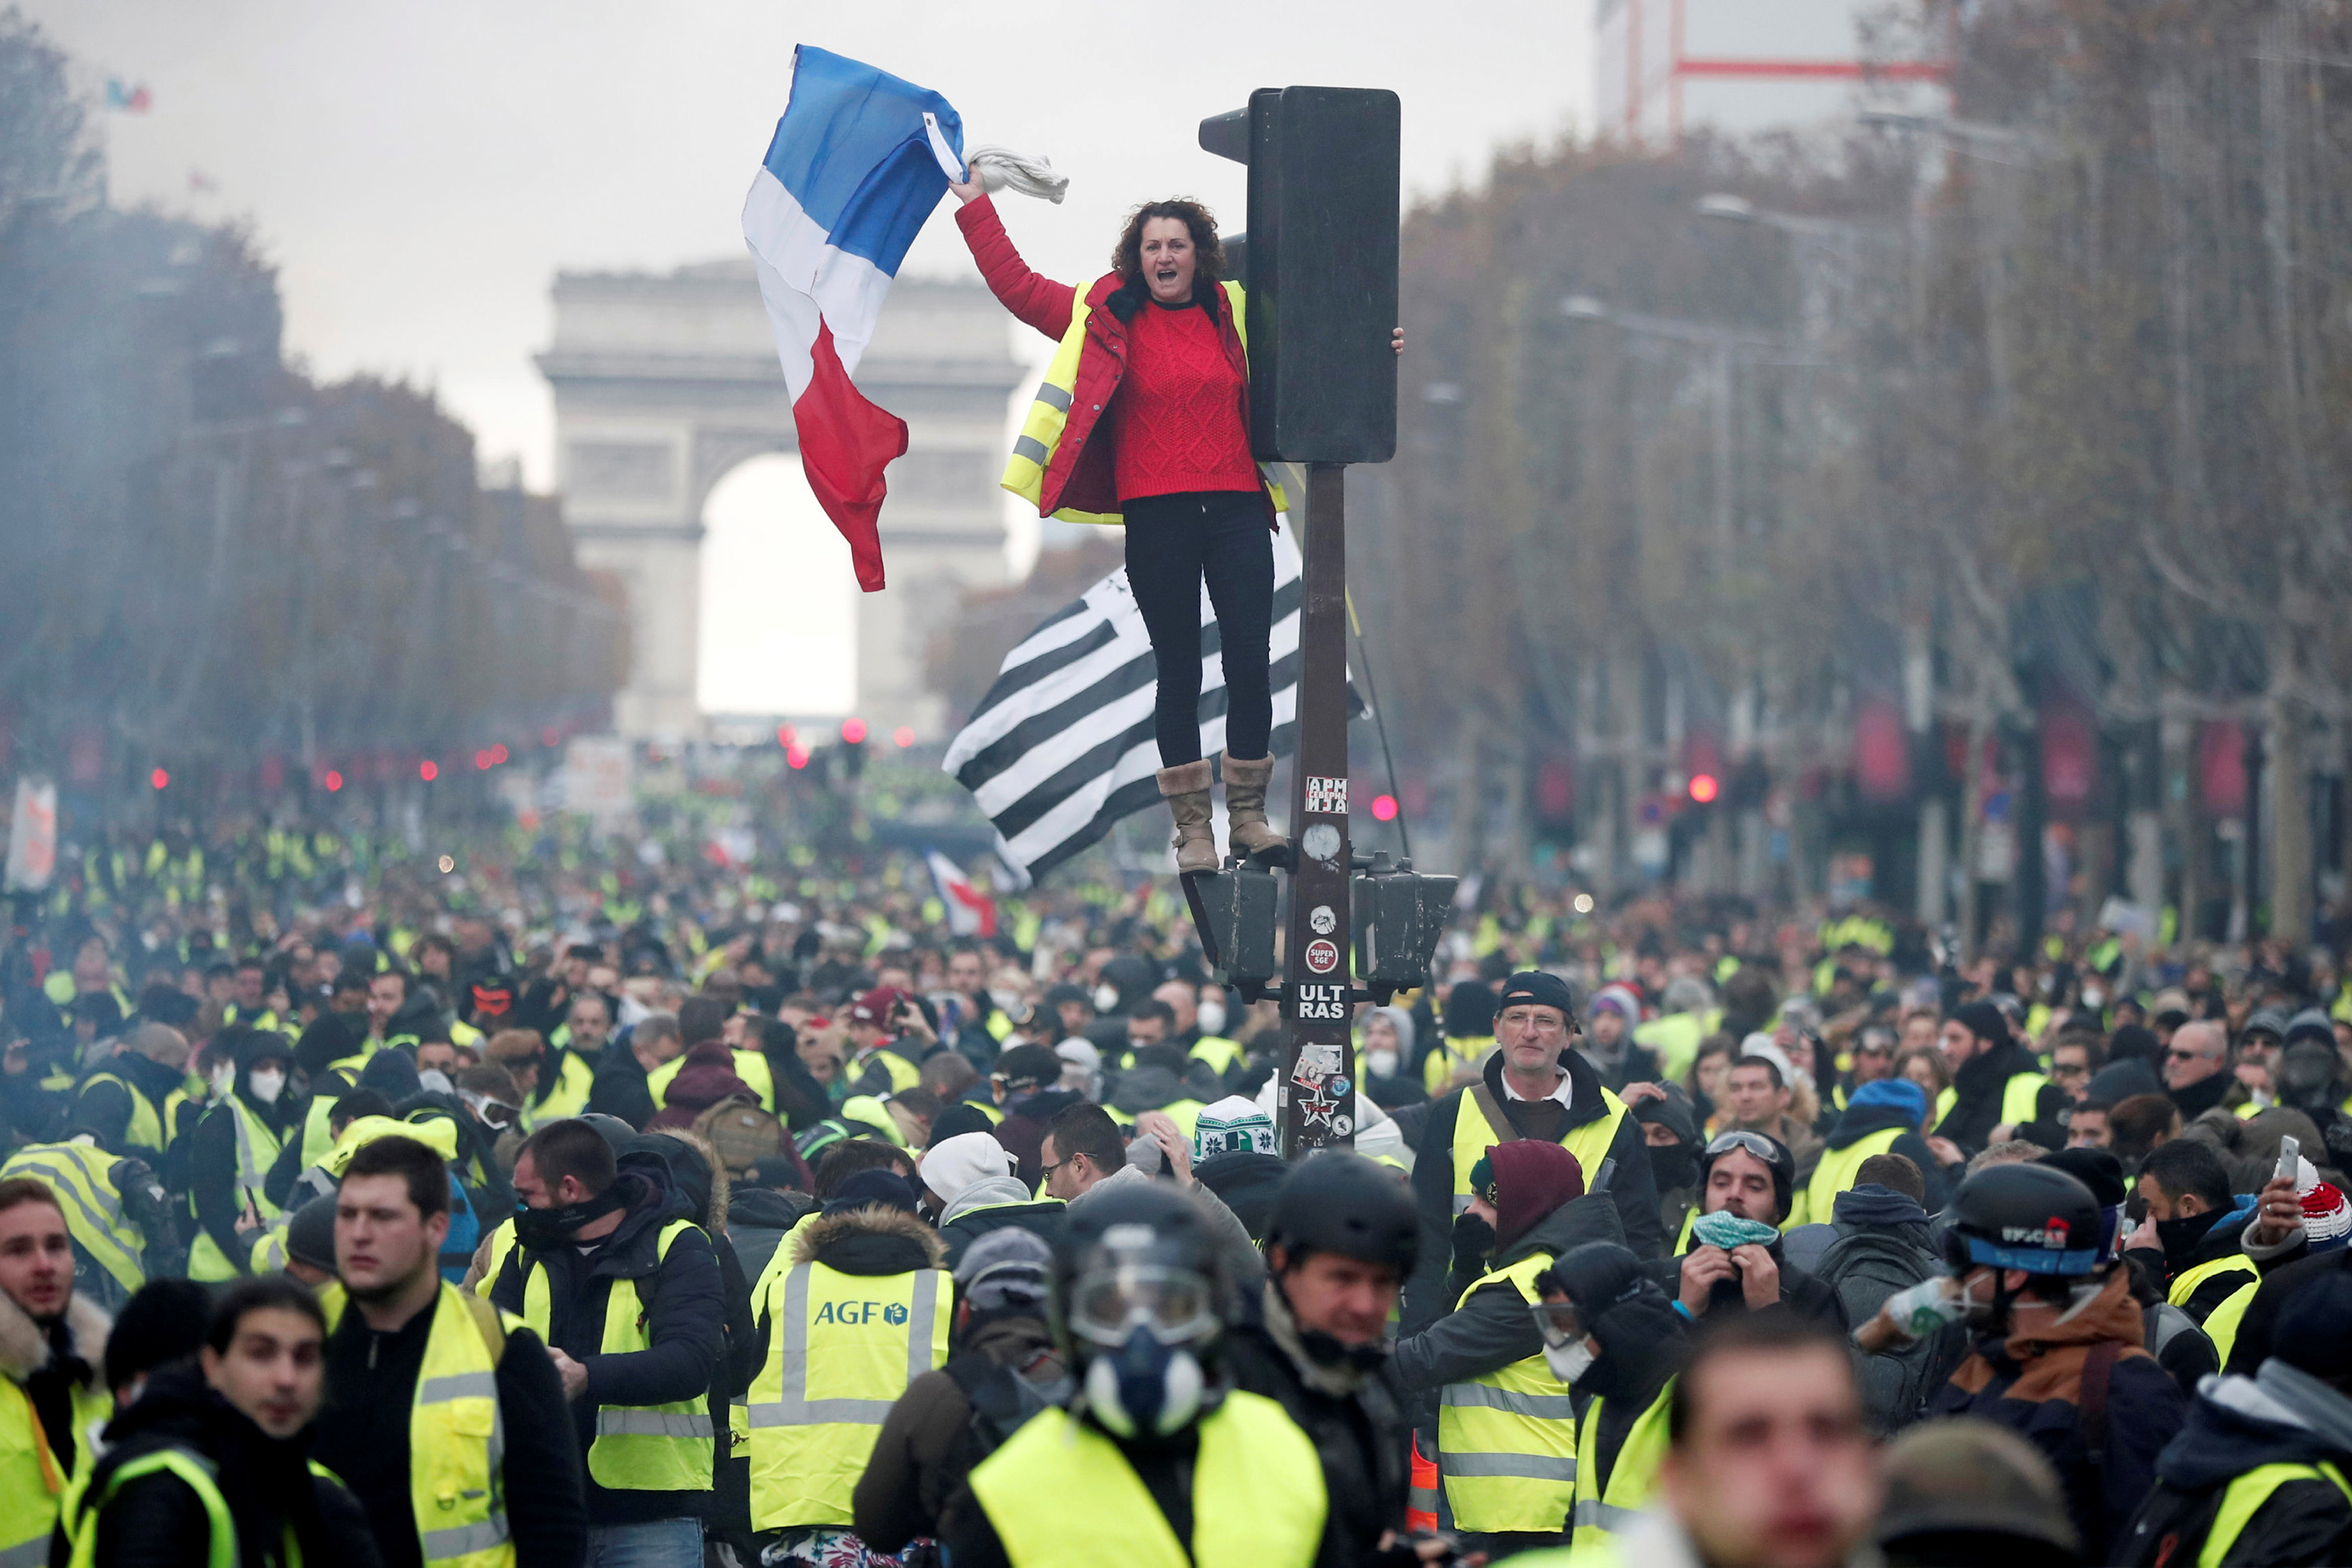 Protestos em Paris contra o governo terminam com prisões e violência VEJA